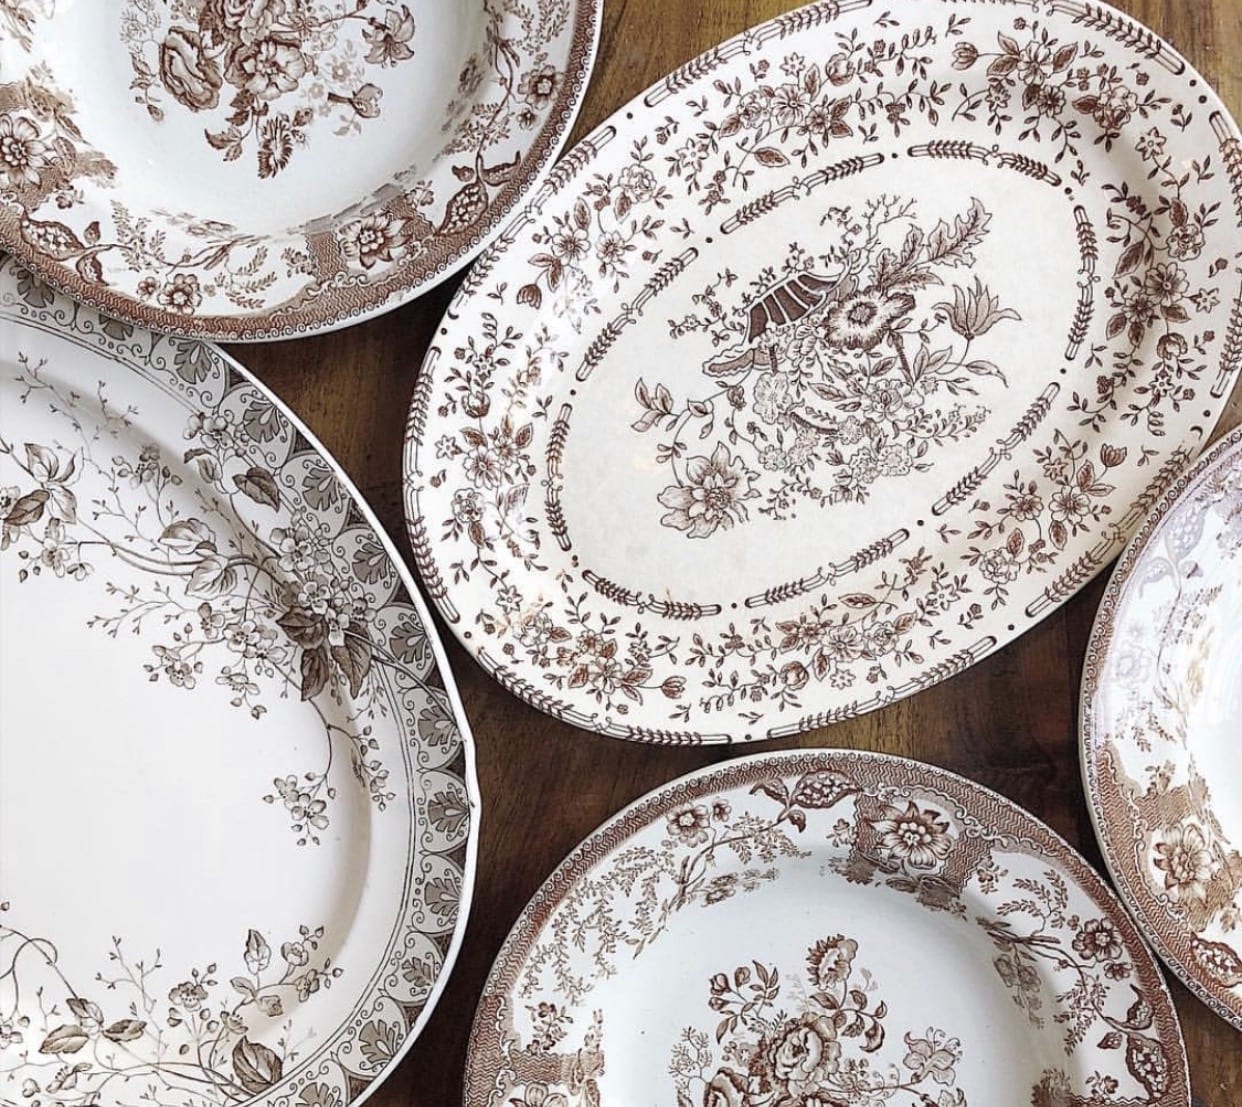 English Pottery Black & White Pheasant Plates